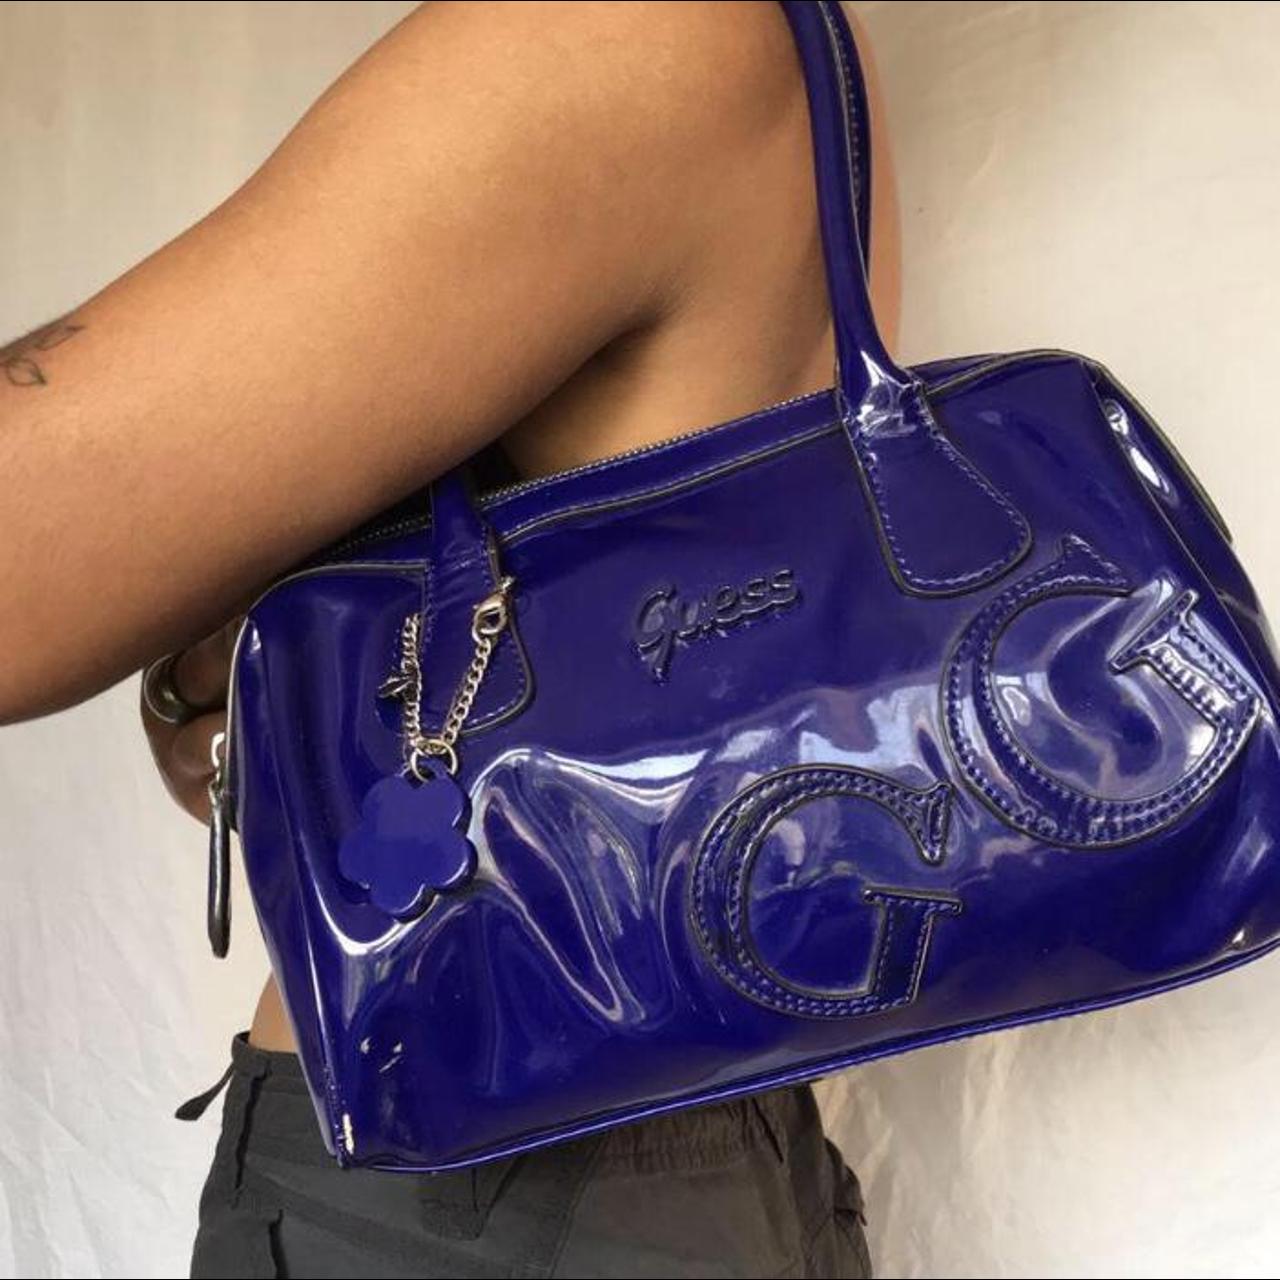 Guess handbag / shoulderbag 💙 Patent leather. ... - Depop